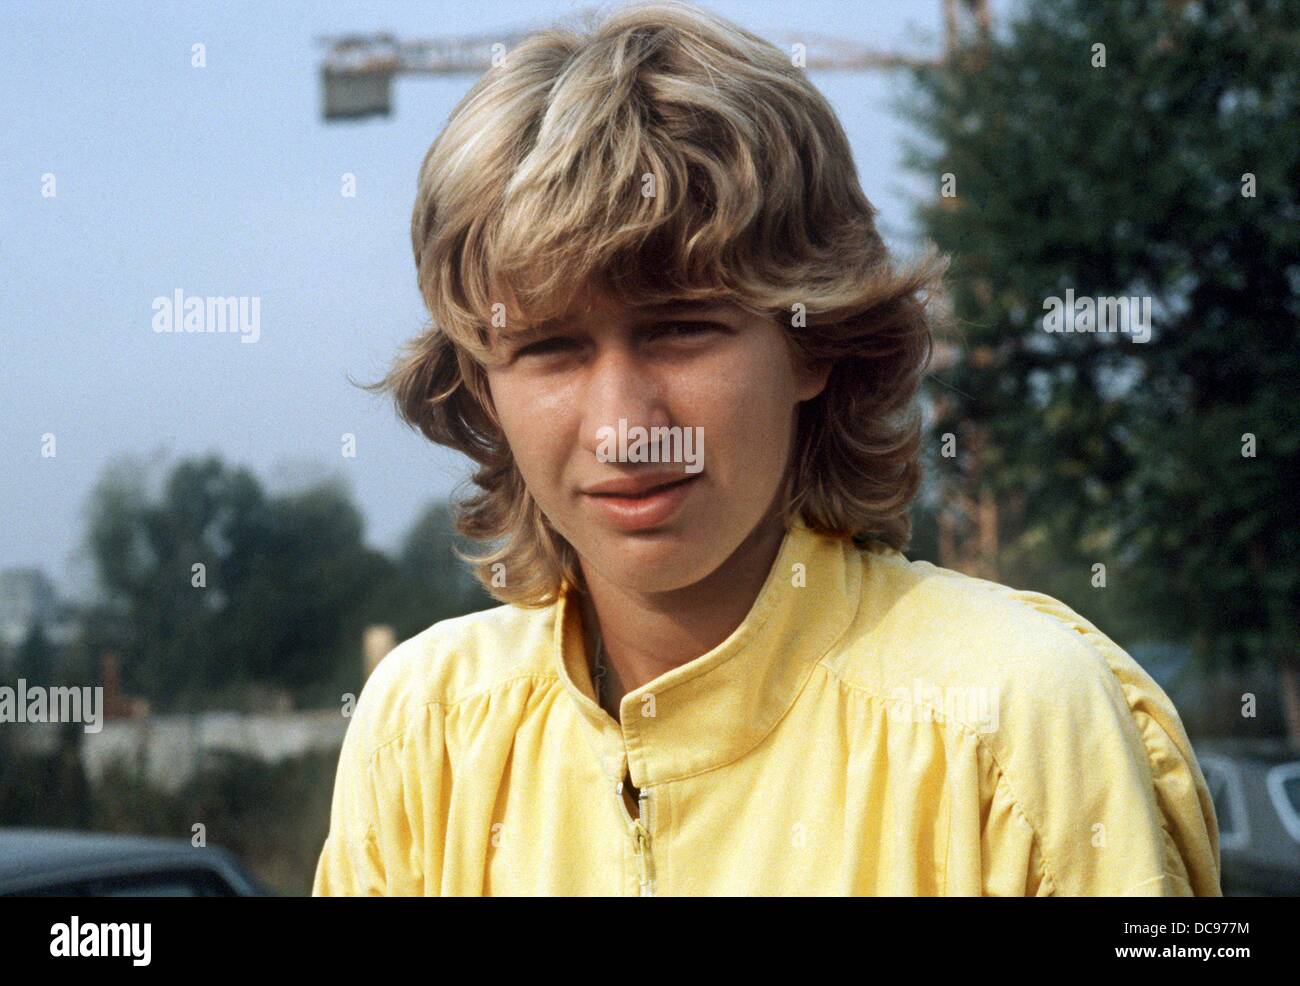 Joueuse de tennis Allemande Steffi Graf, photographié en septembre 1985. Banque D'Images